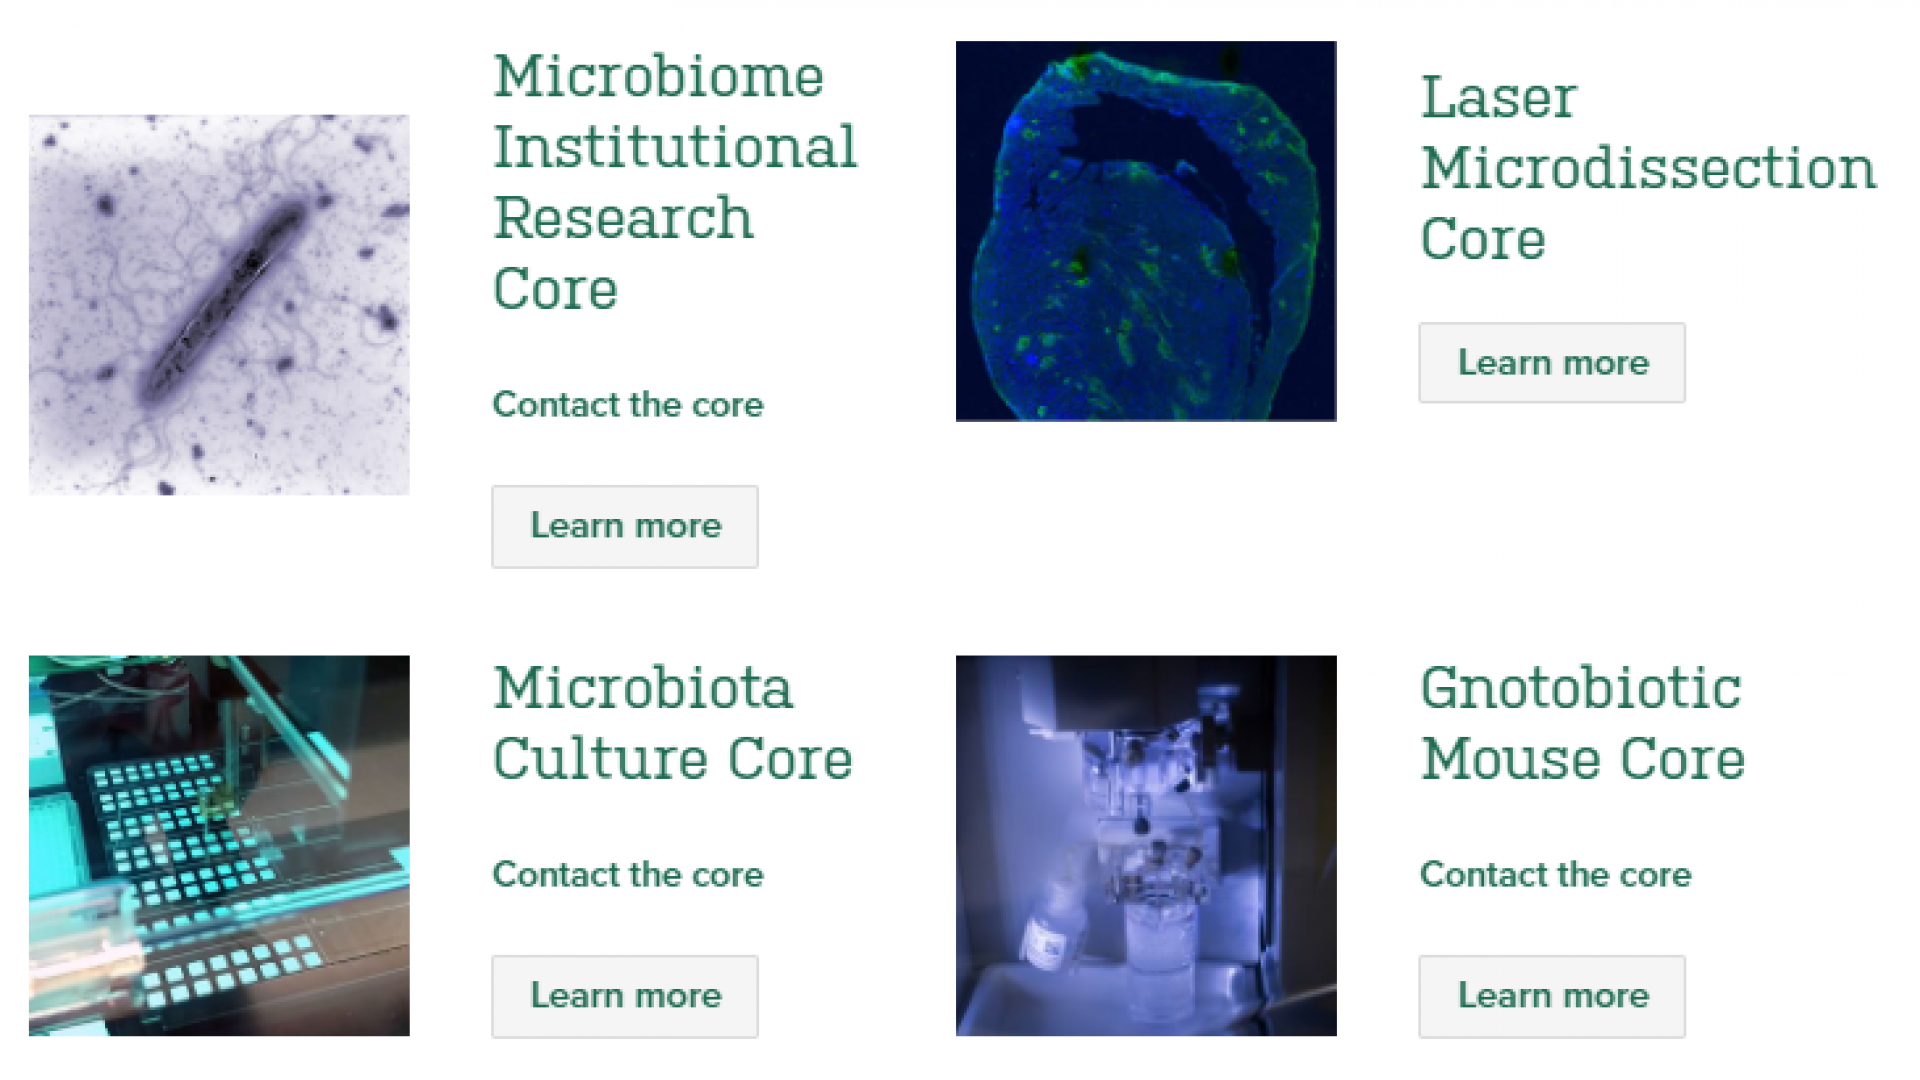 Microbiome Center Cores